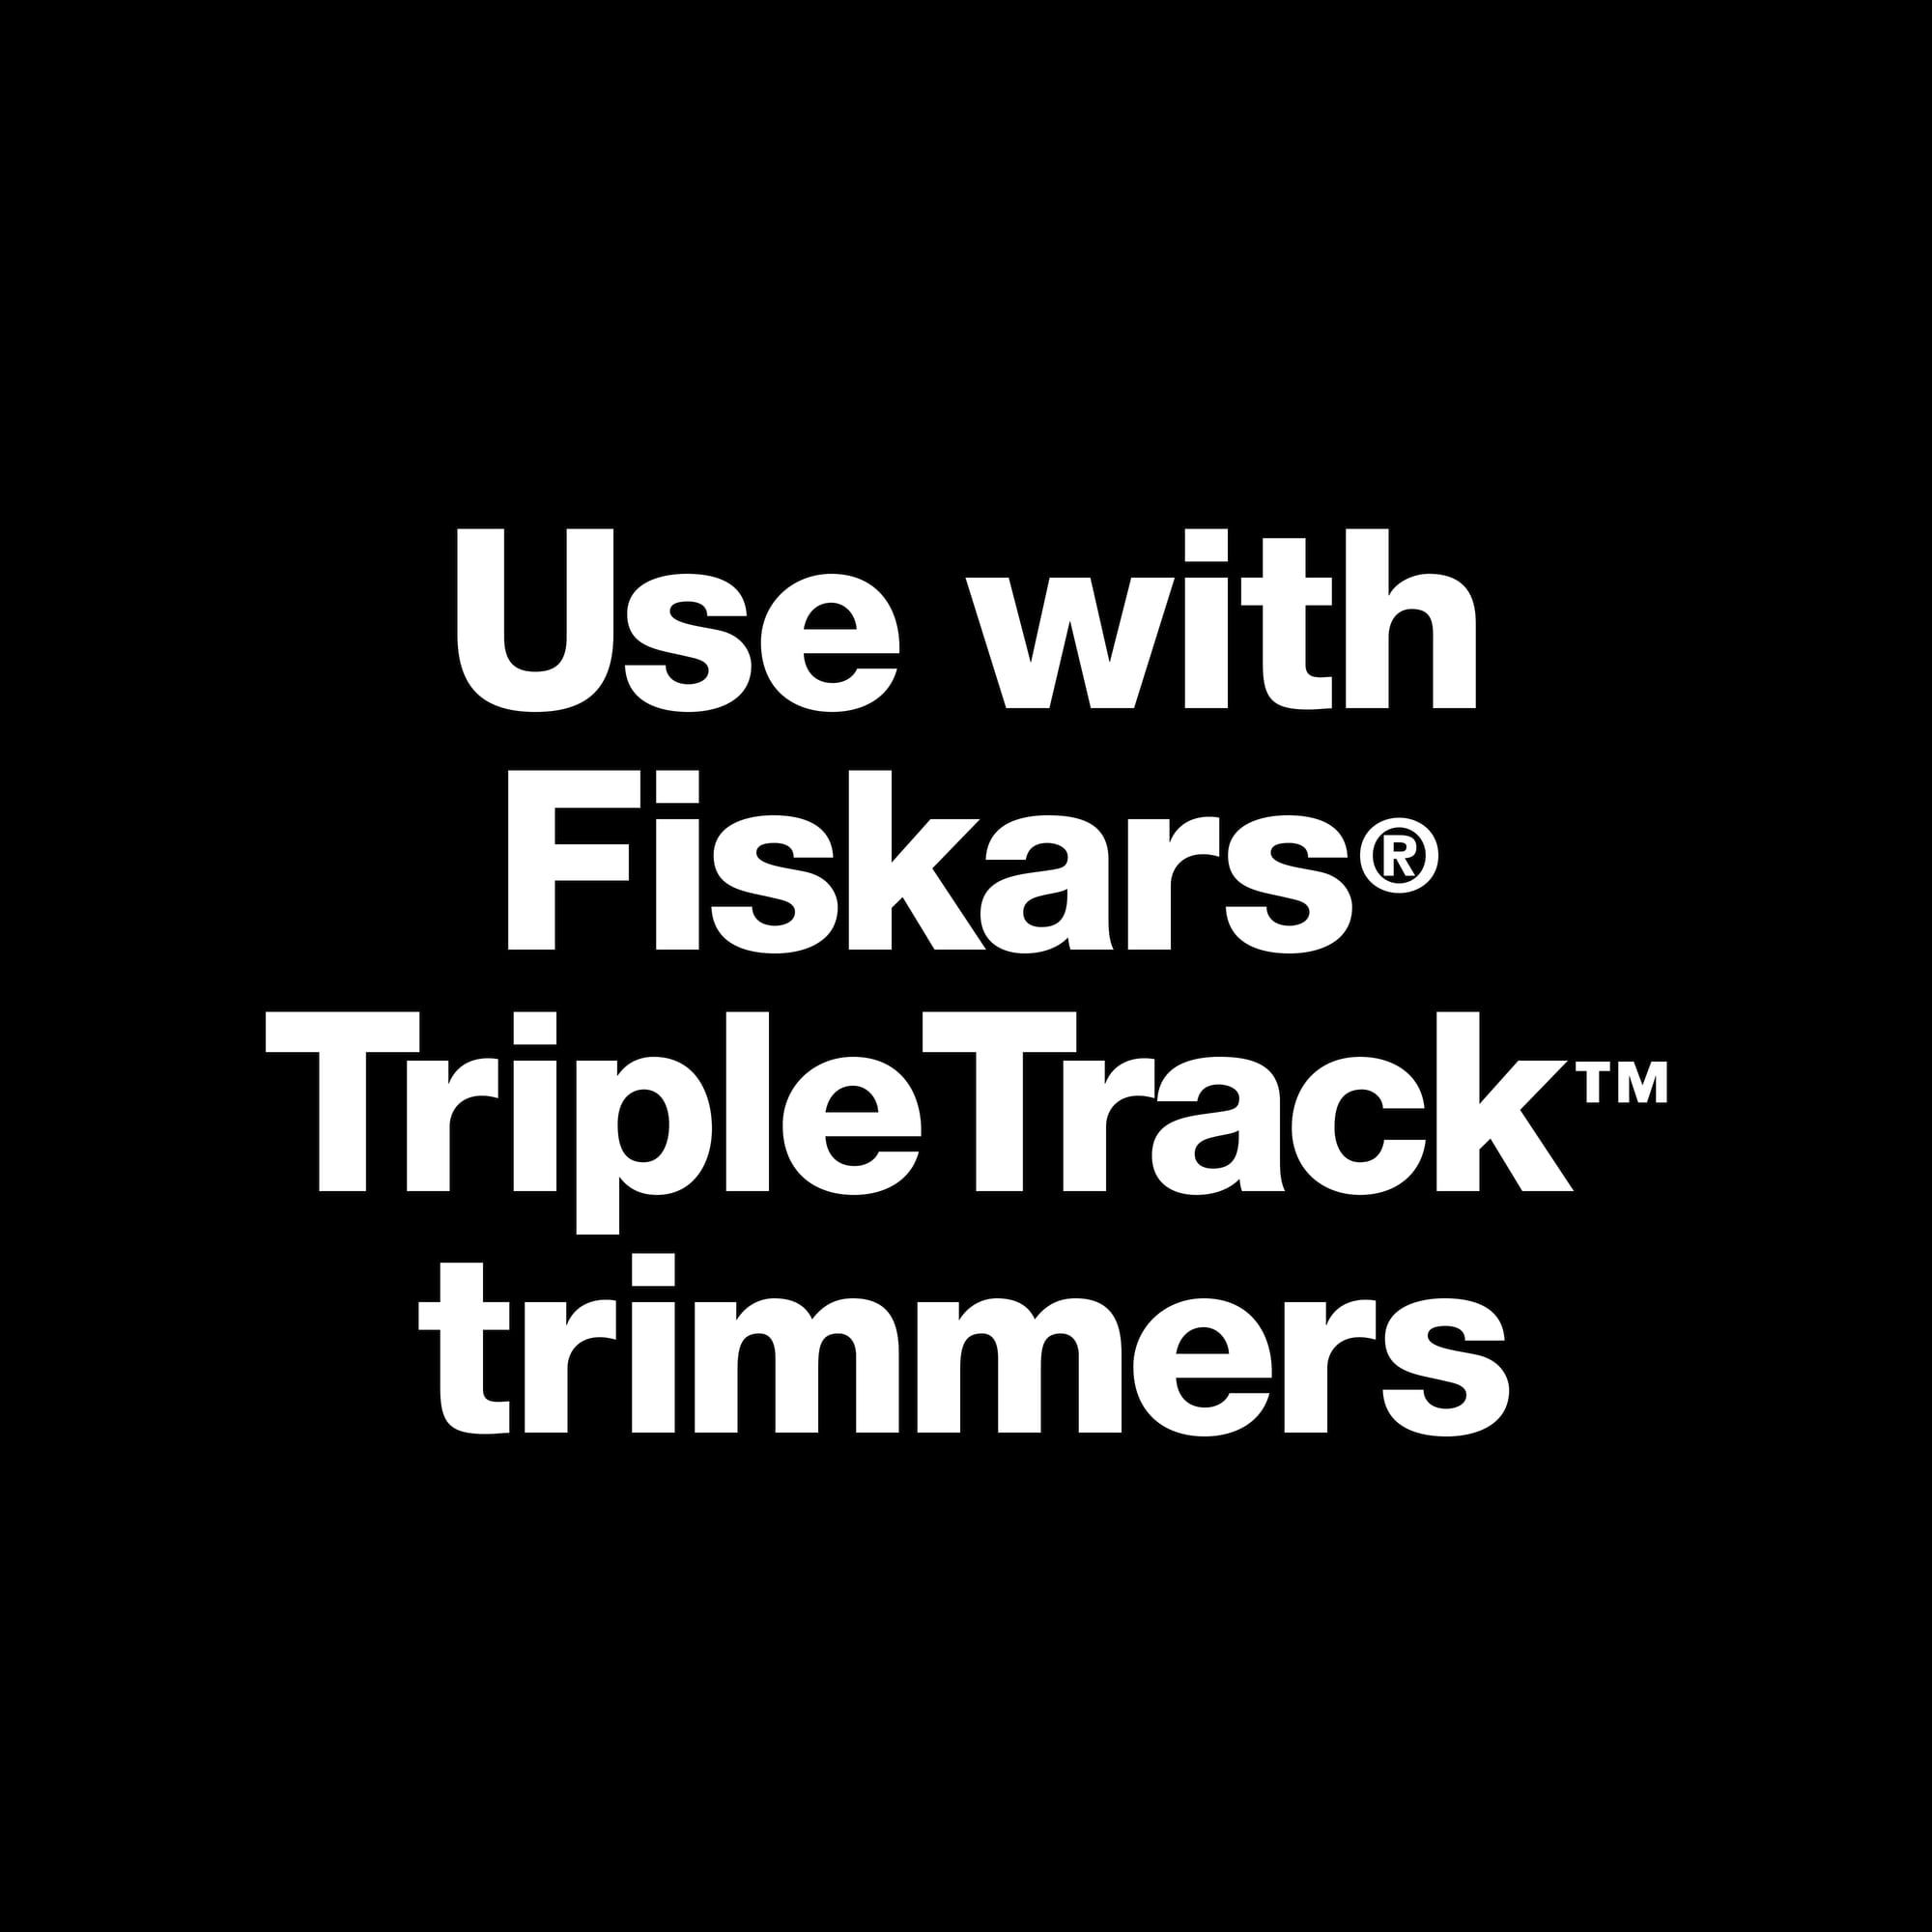 Fiskars 12 Triple Track Trimmer – TM on the Go!